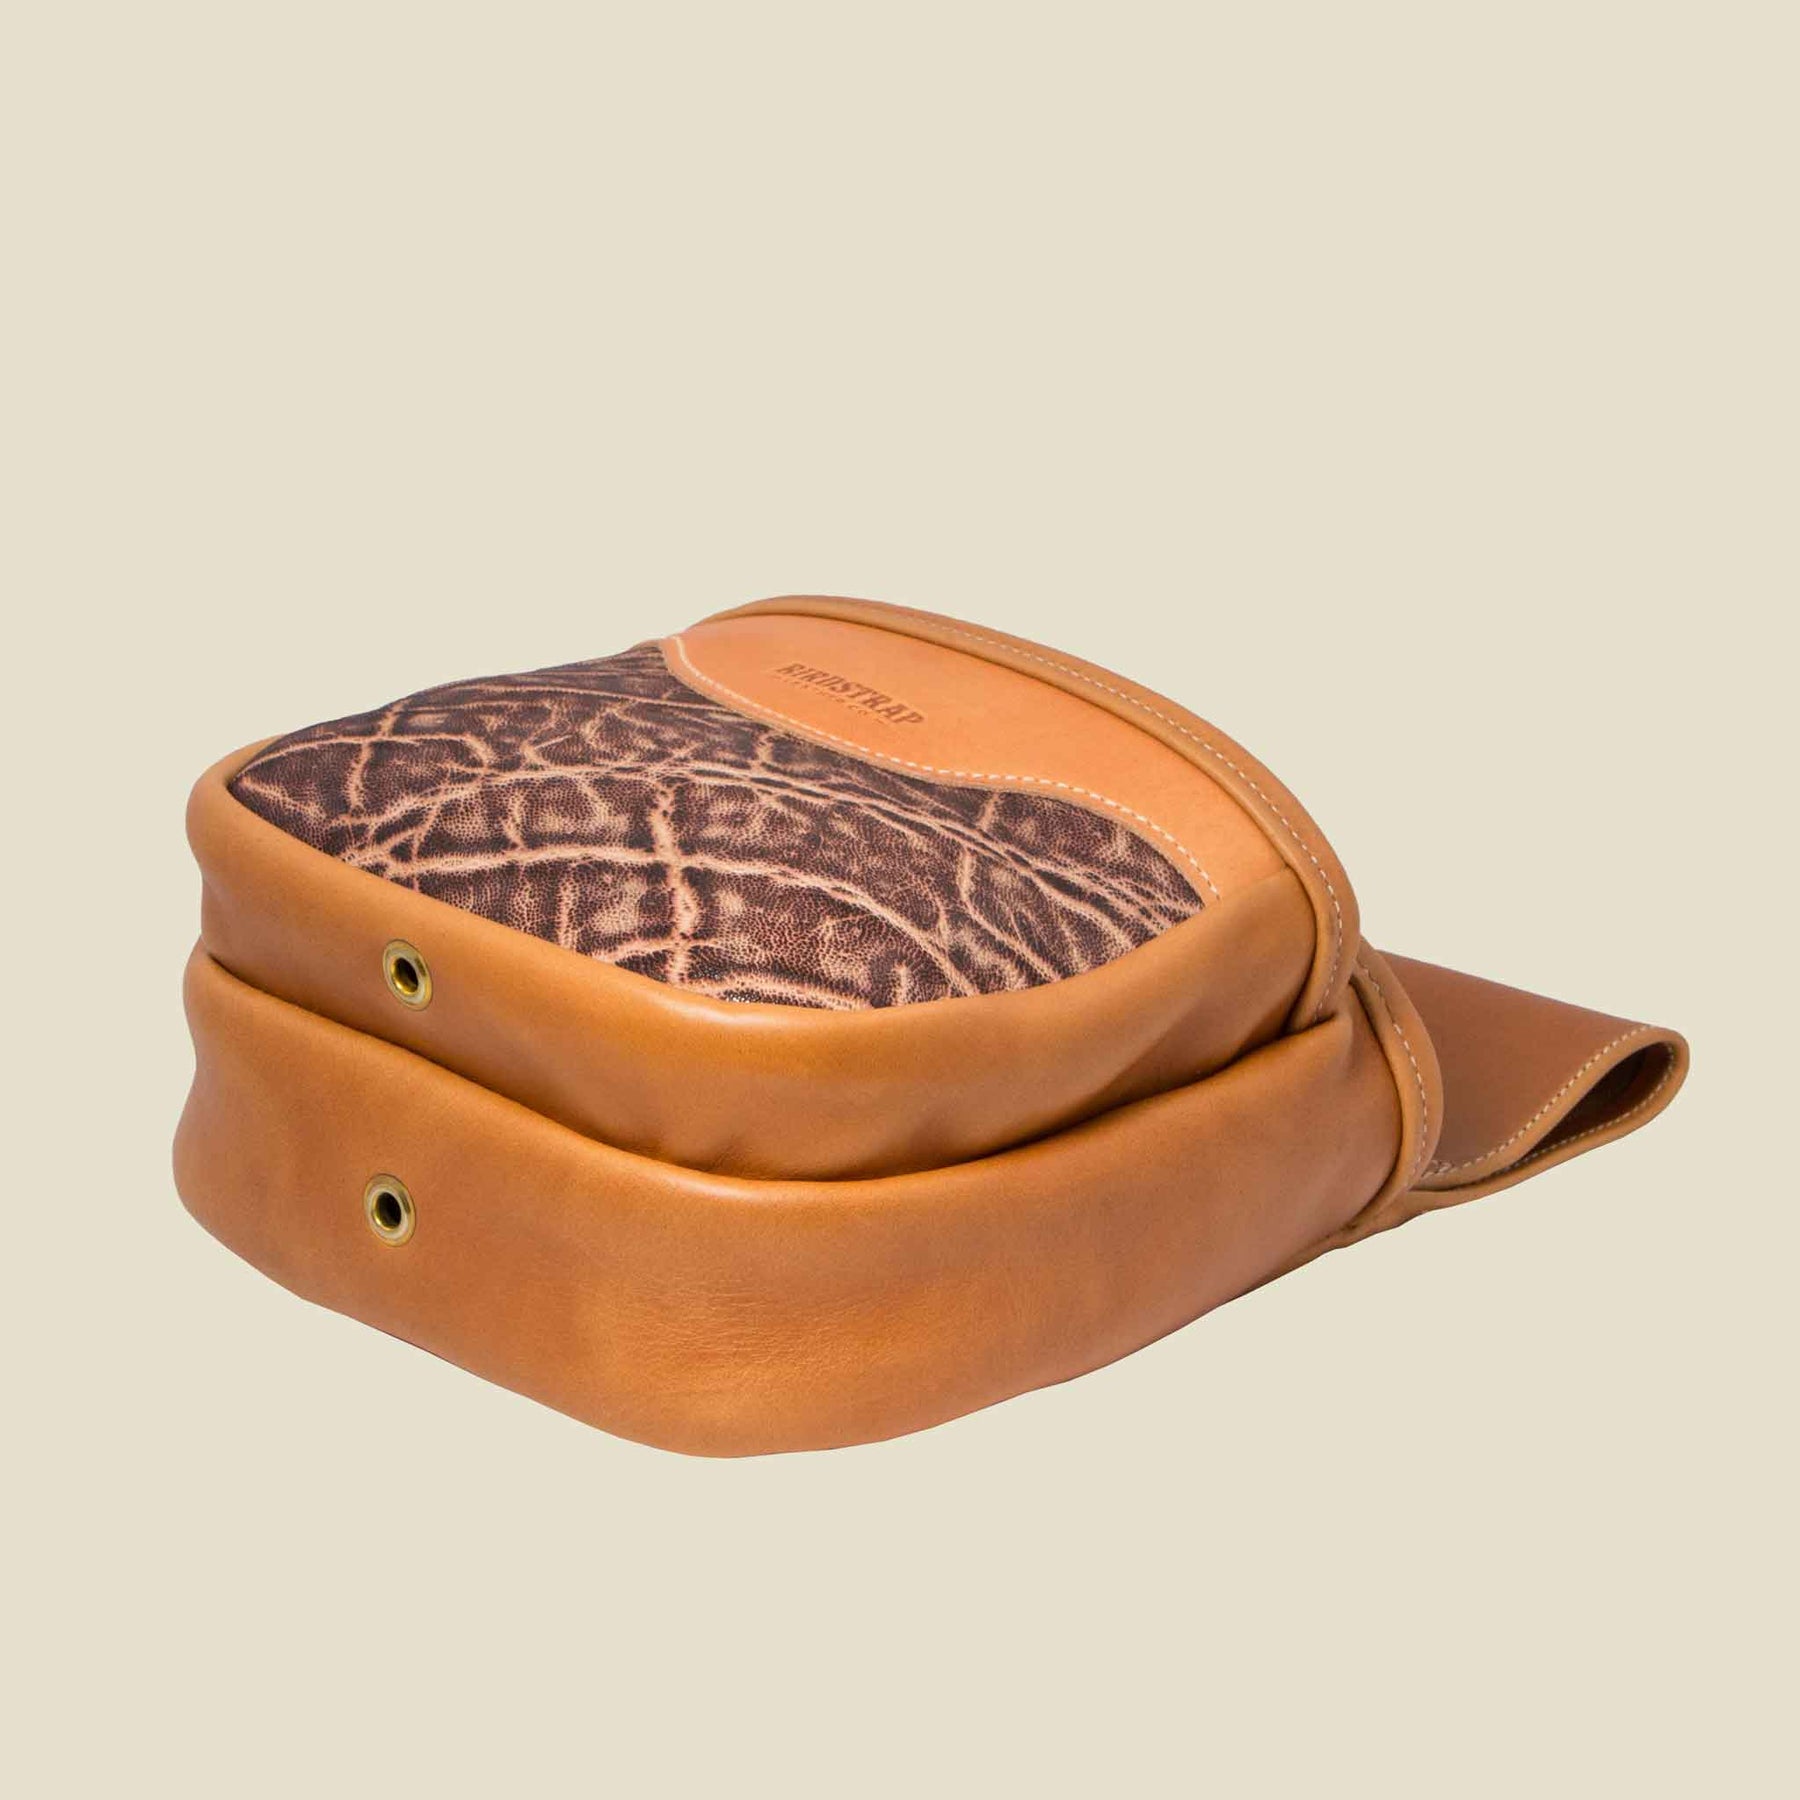 Travel Leather Bag Luggage Elephant Skin Stock Photo 1718484772